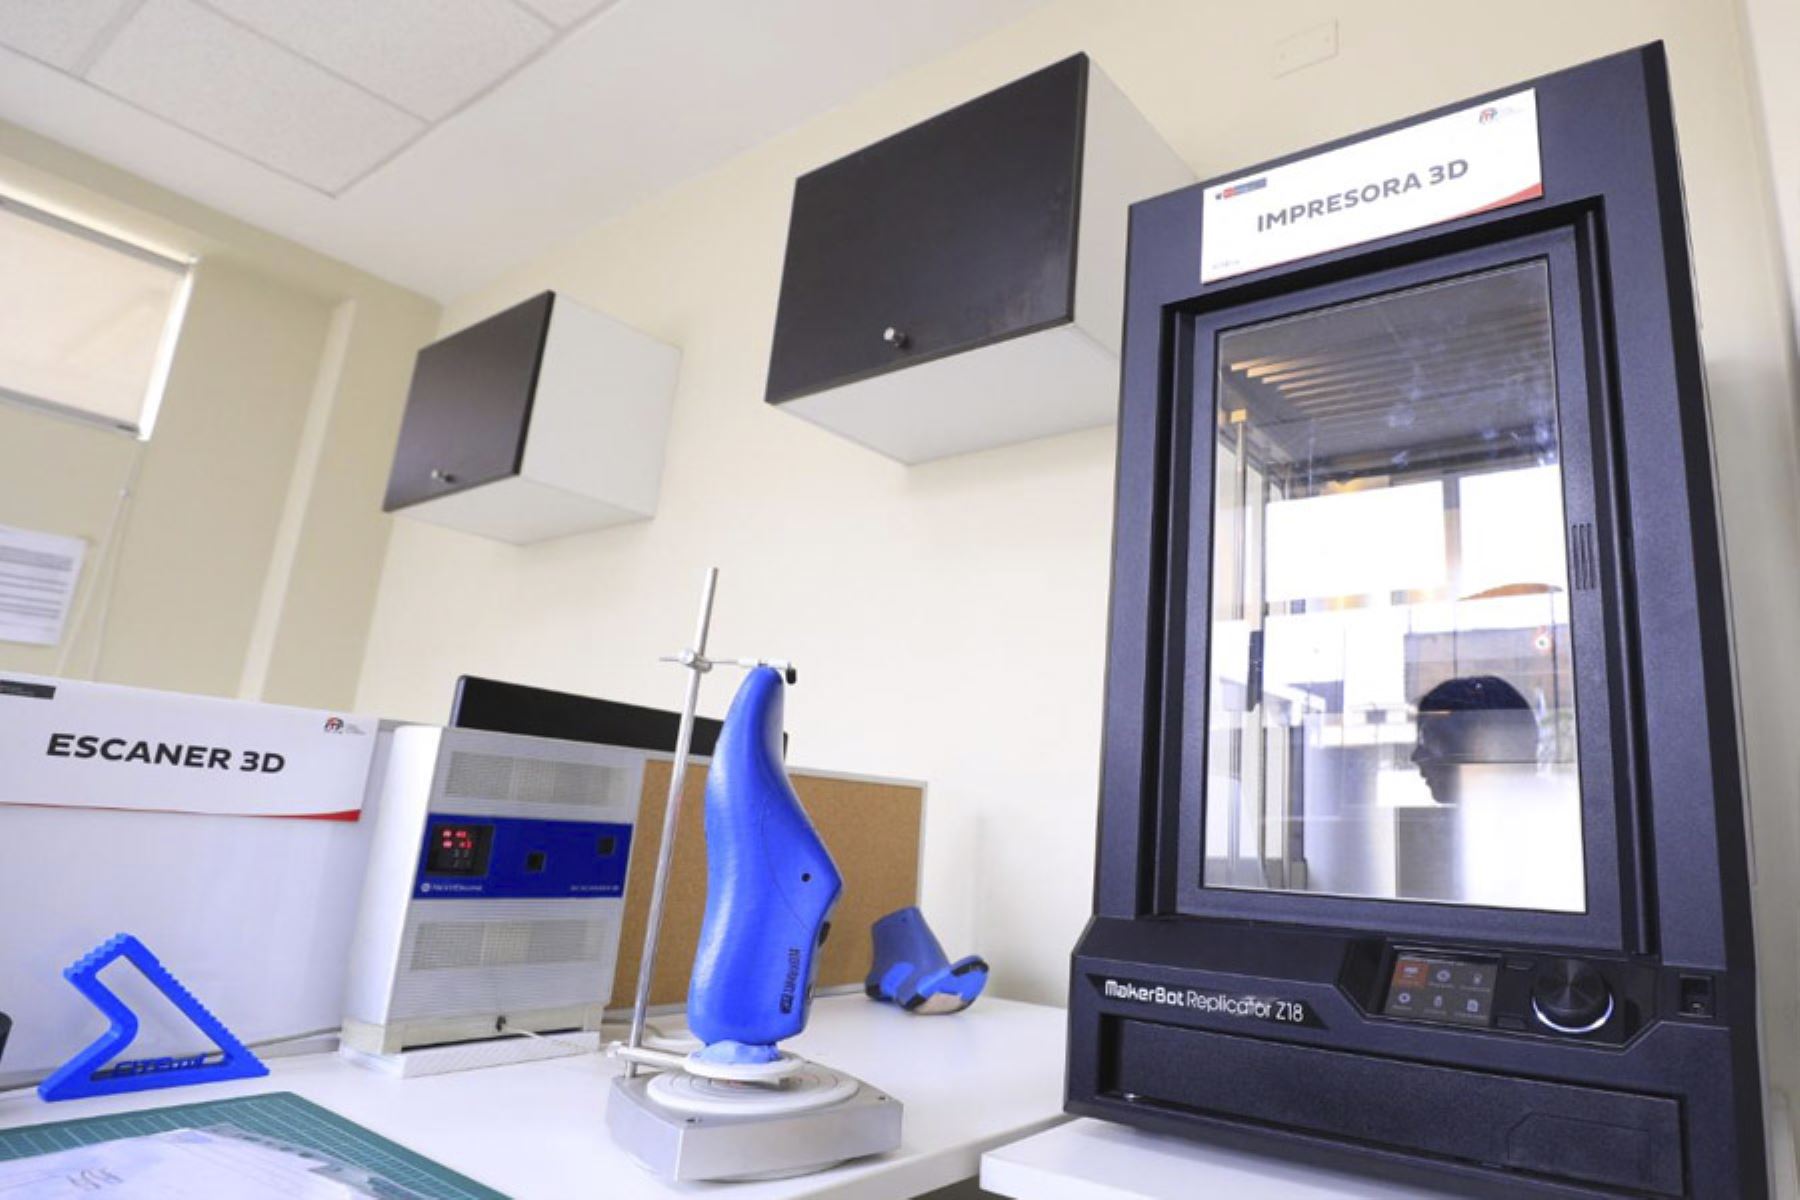 En la sede se ha instalado nuevo equipamiento con tecnología de escáner 3D, impresión 3D y otros softwares.